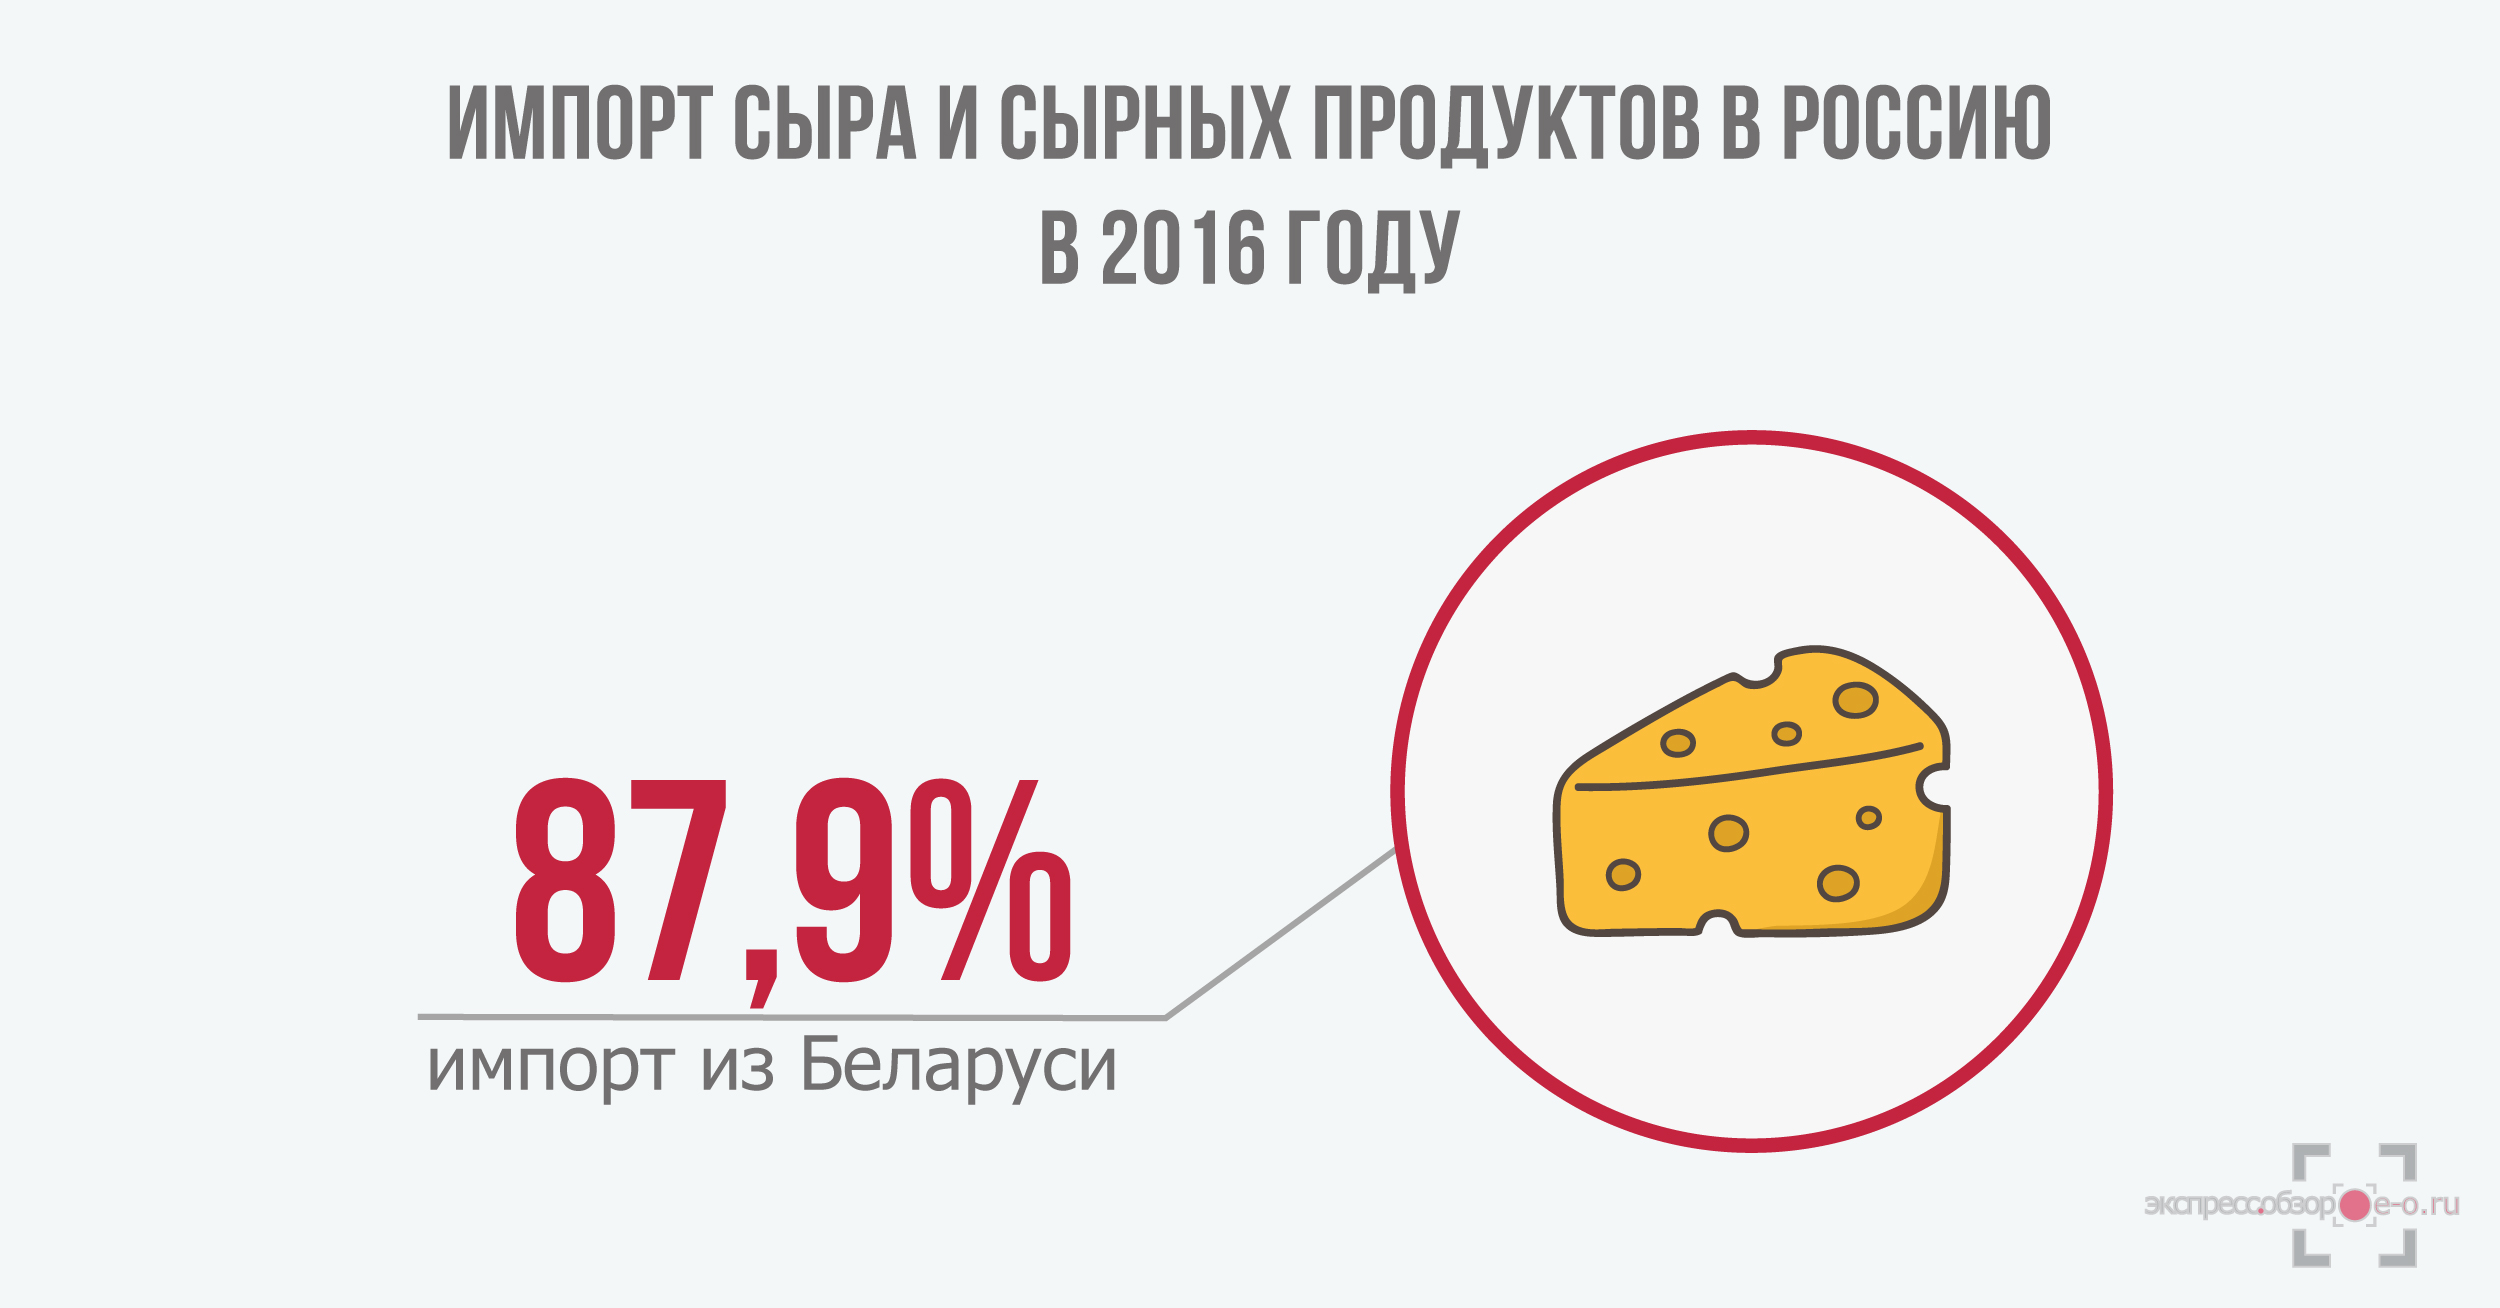 структура импорта сыра в Россию в 2016 году